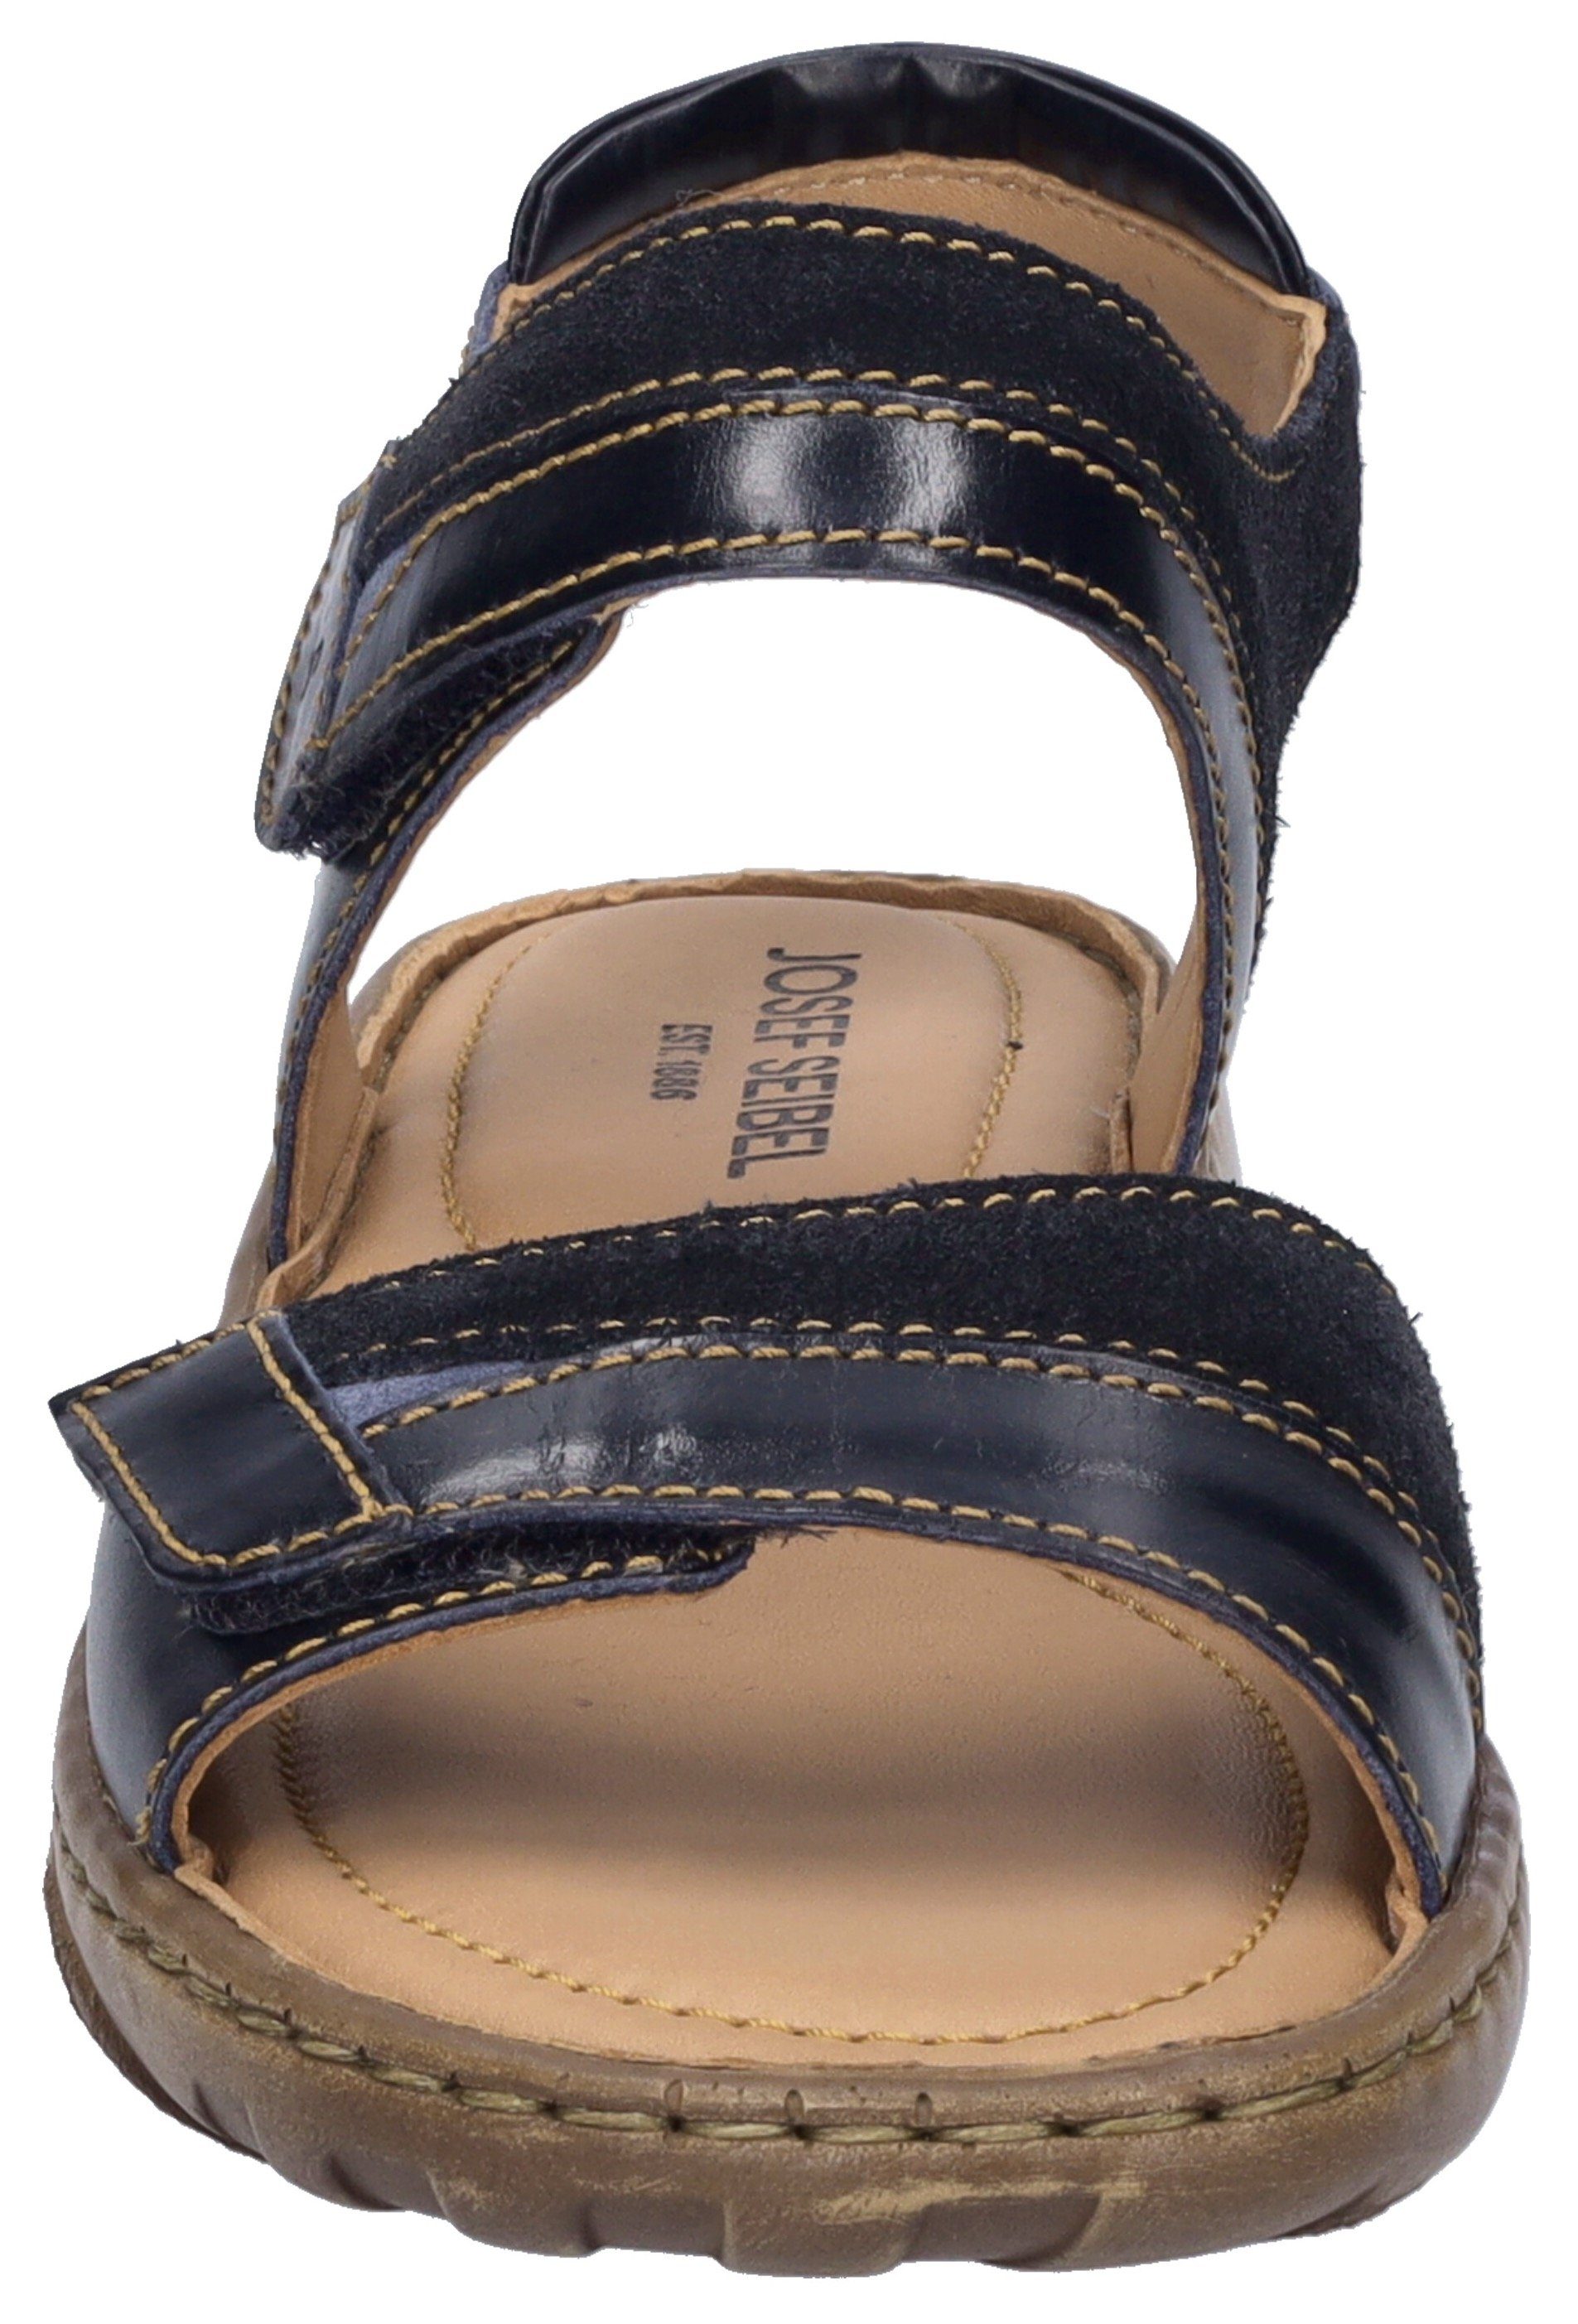 jeansblau Josef Debra 19 Klettverschluss Seibel mit praktischem Sandale